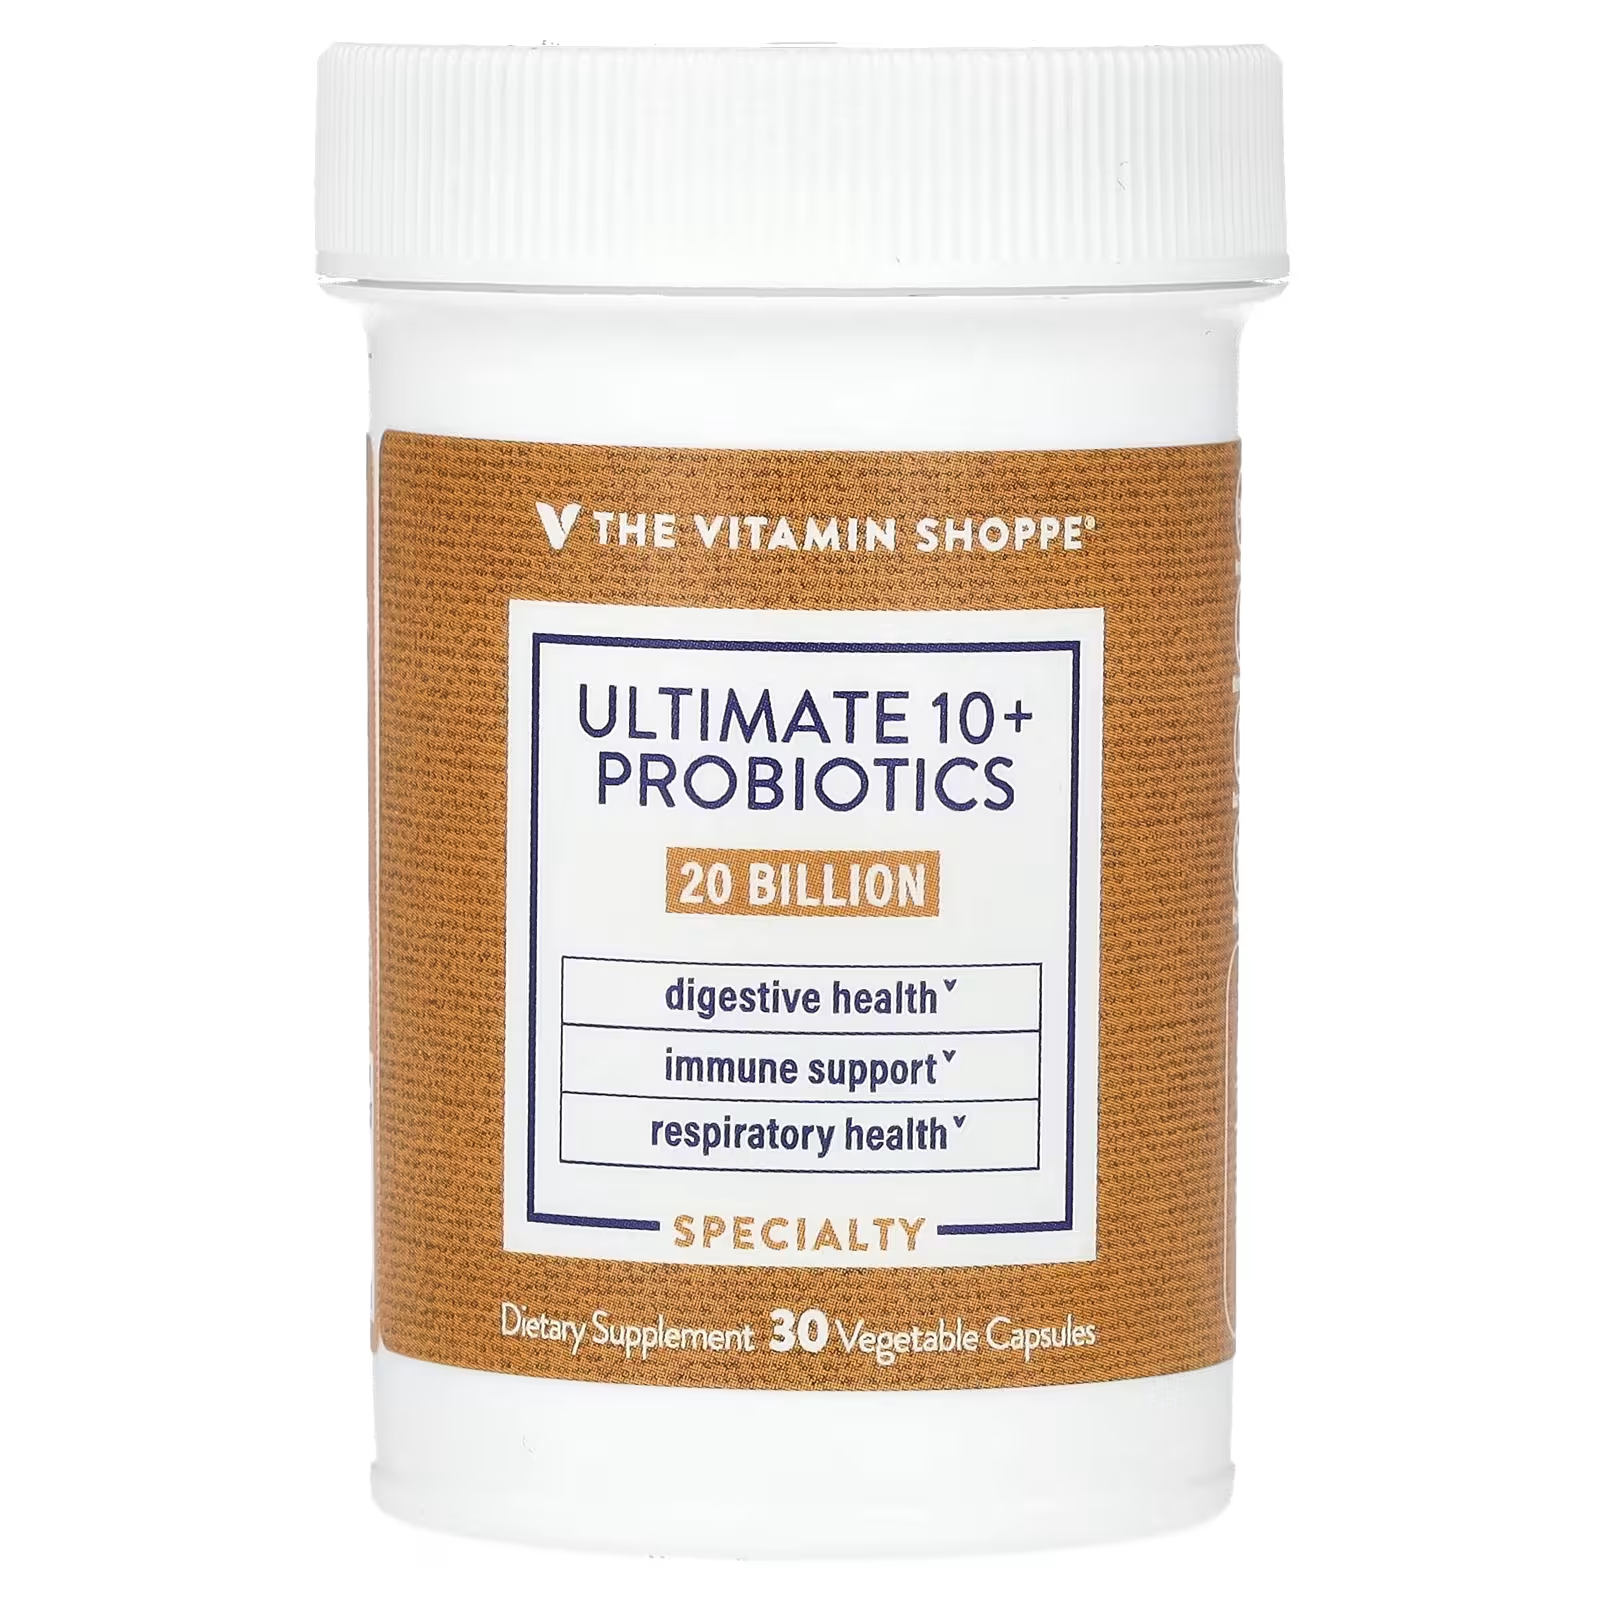 Пищевая добавка The Vitamin Shoppe Ultimate 10+, 30 растительных капсул ultimate 10 пробиотиков 30 миллиардов кое 60 растительных капсул the vitamin shoppe